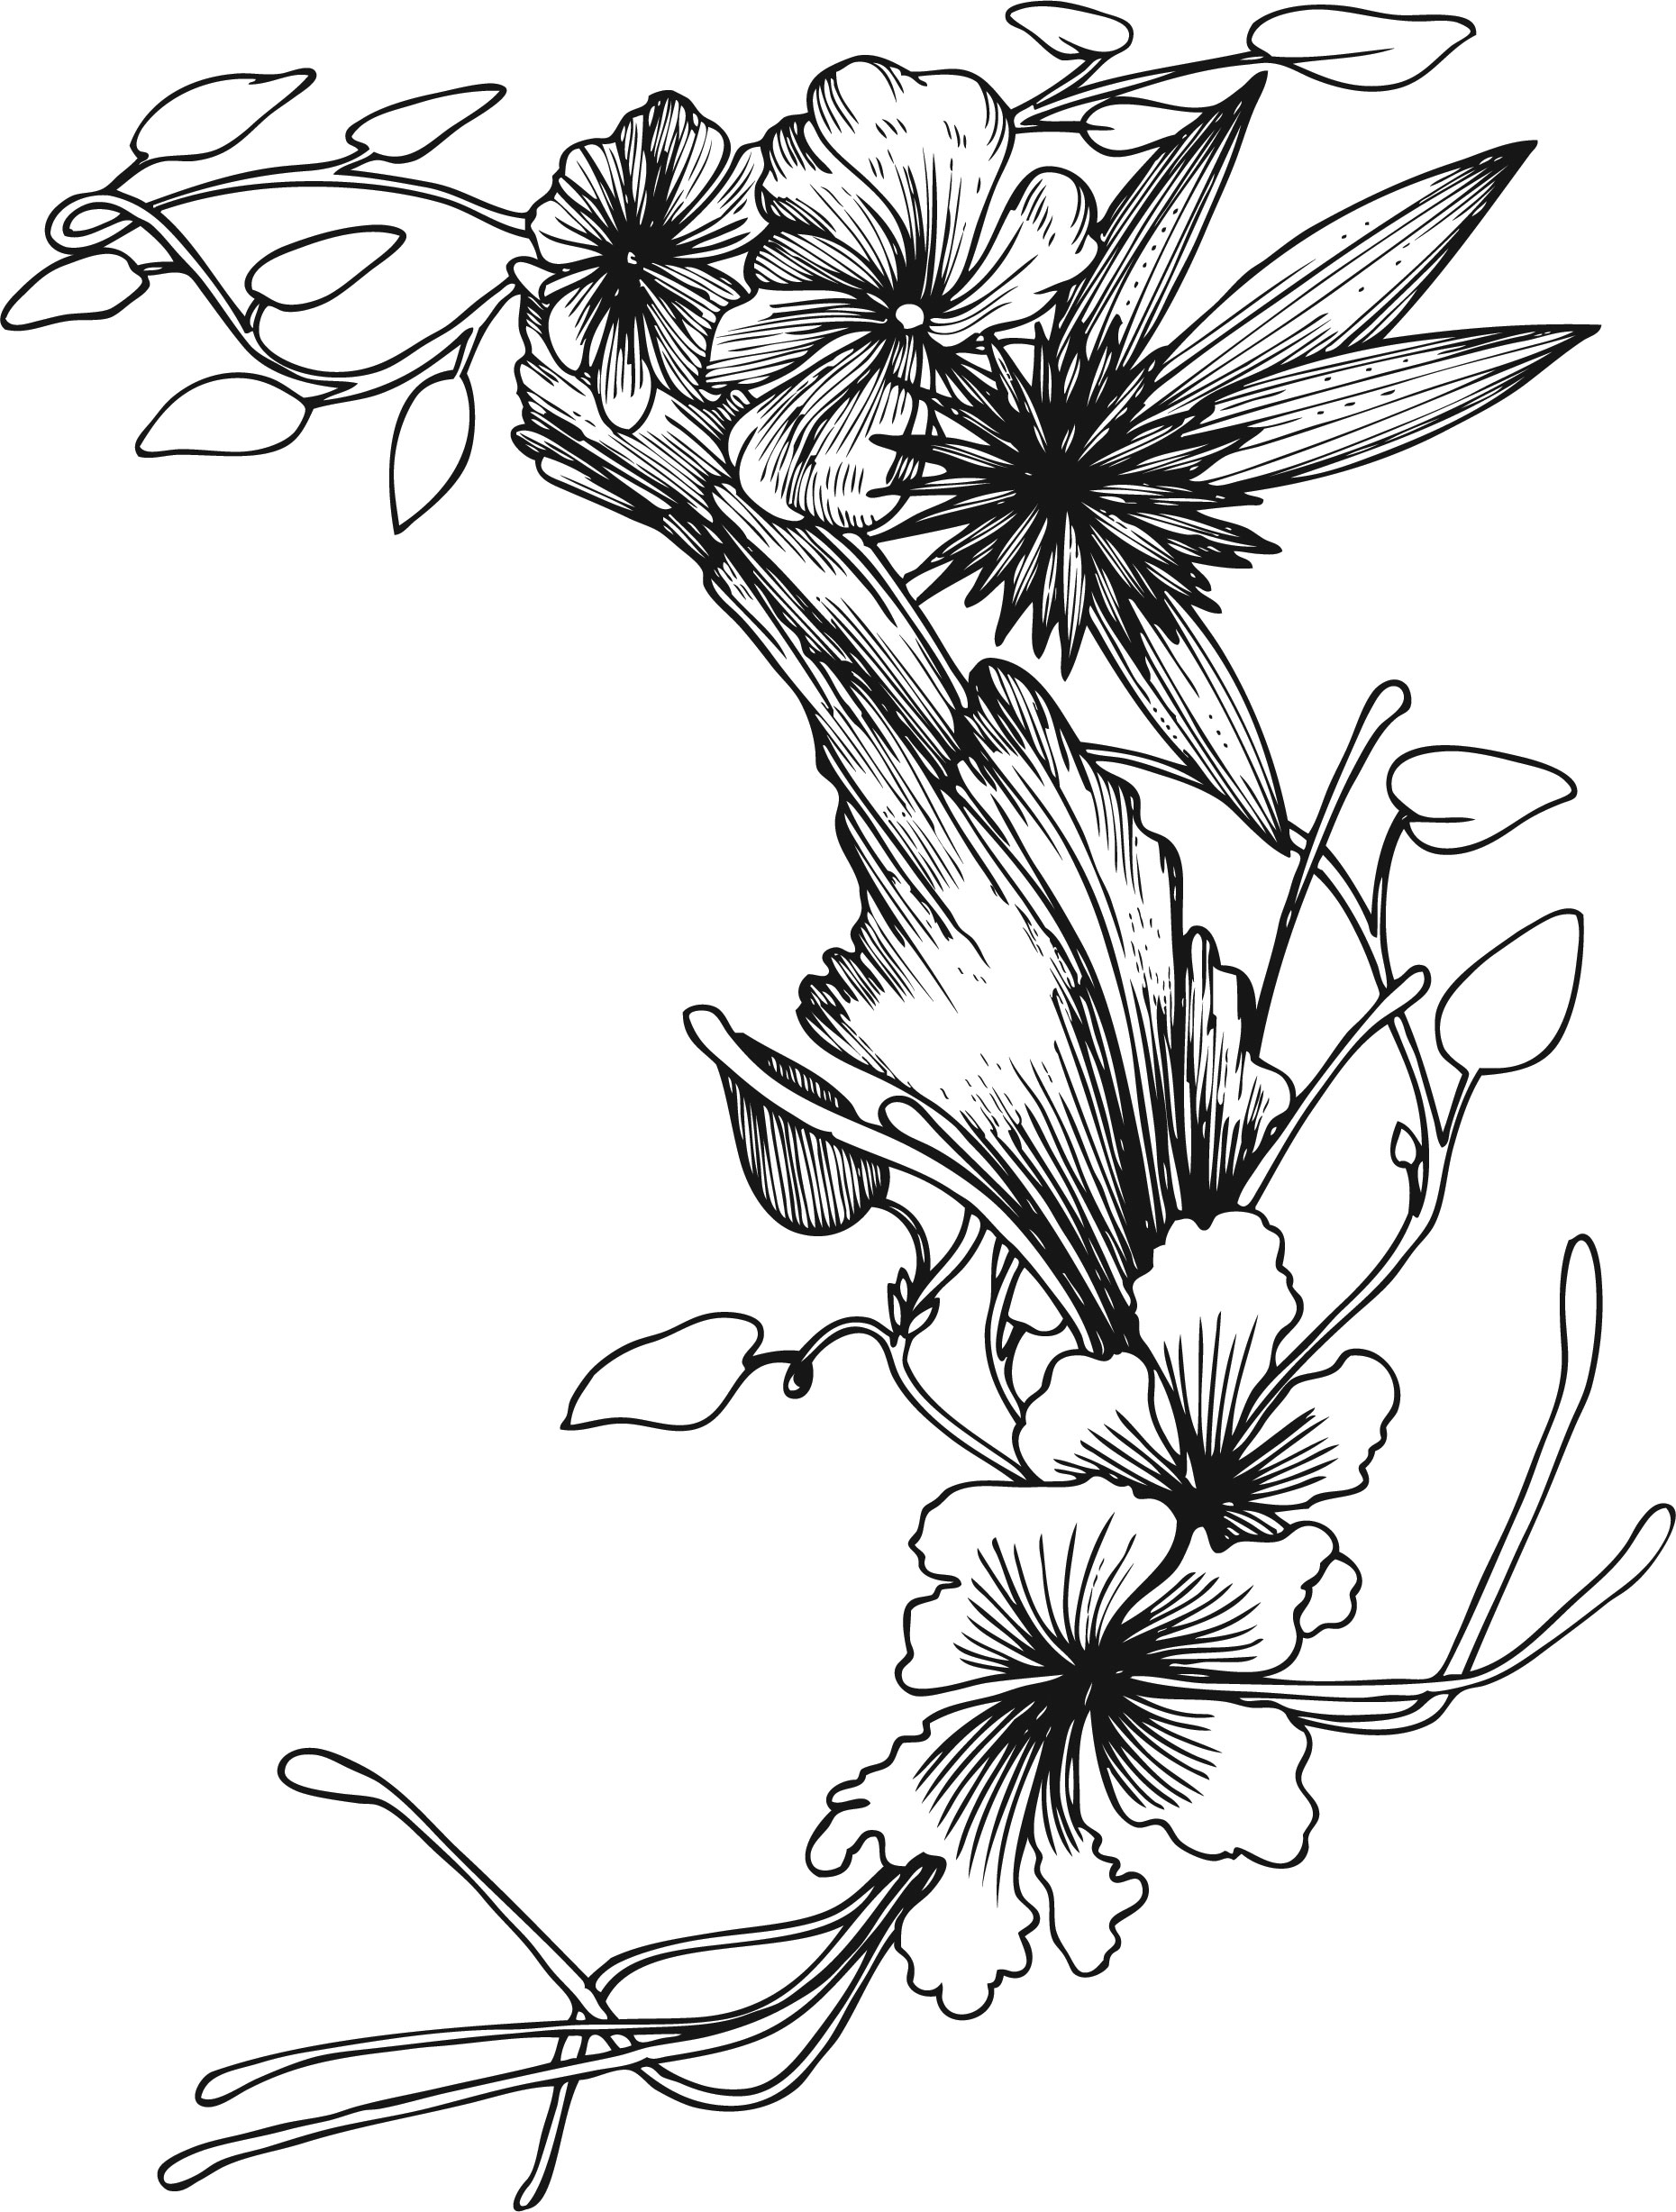 白黒の花のイラスト-白黒・枝葉